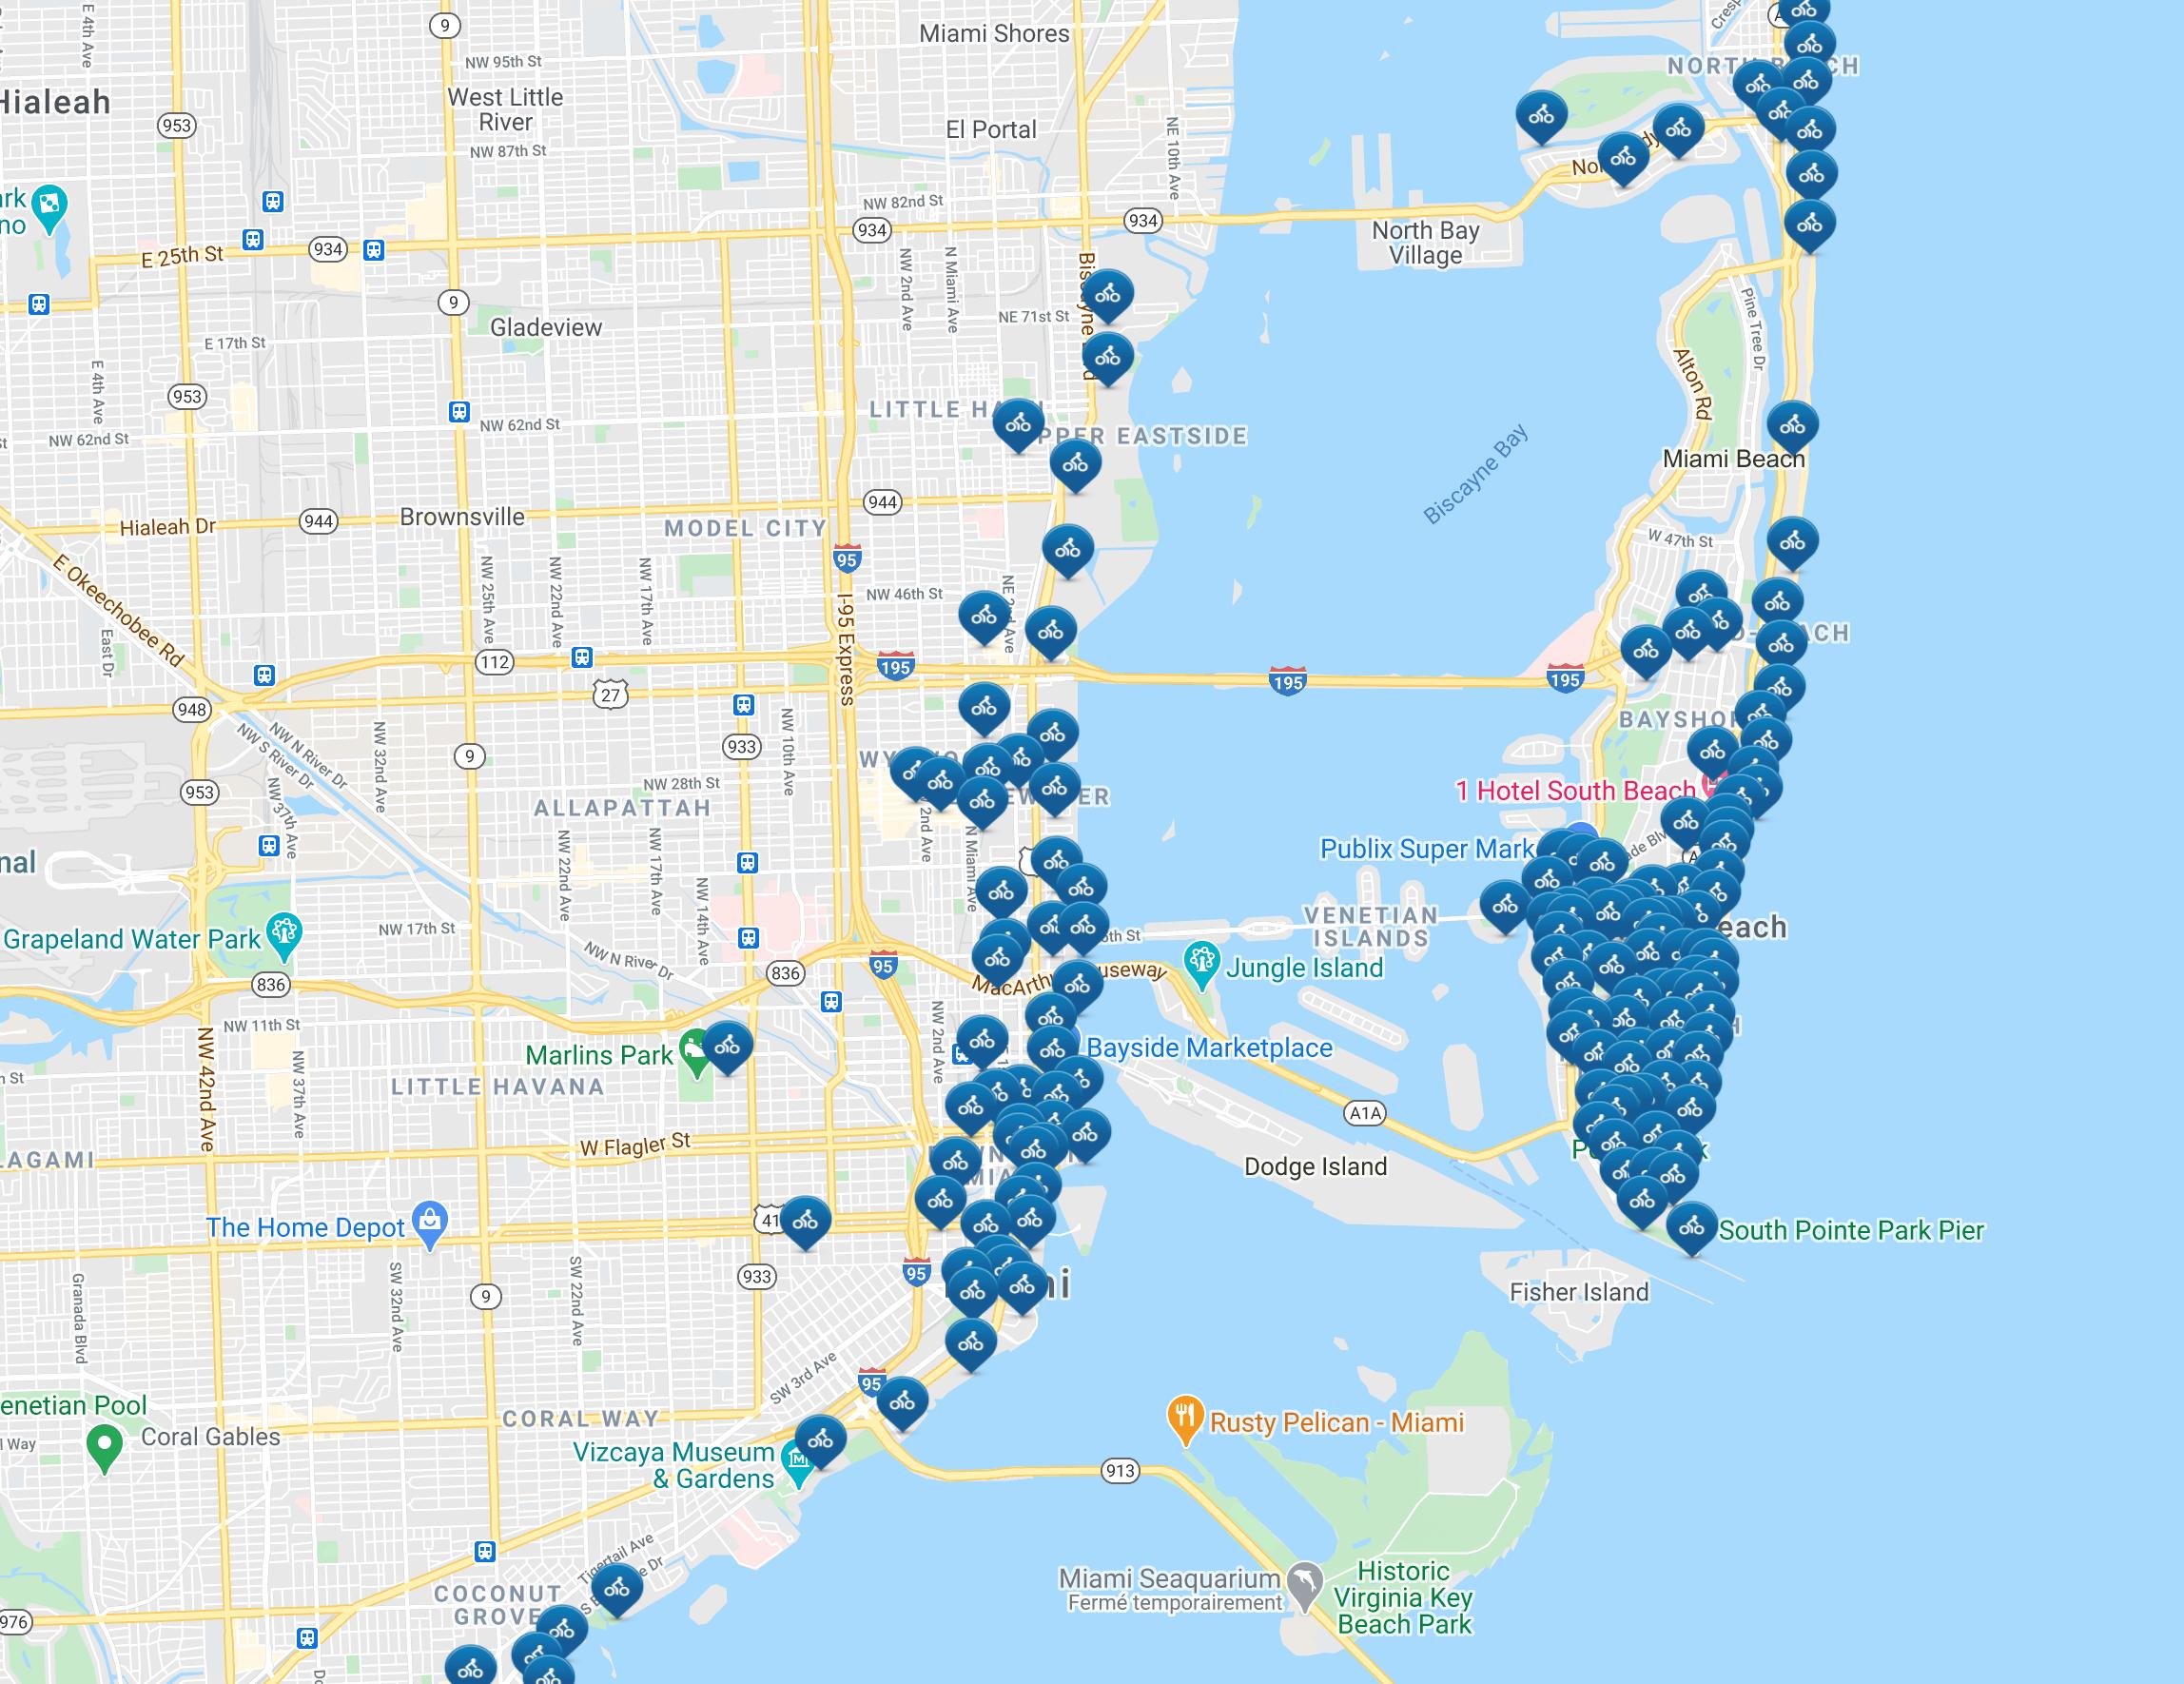 miami térkép Citi kerékpár, Miami térkép   Miami citi kerékpáros térkép  miami térkép